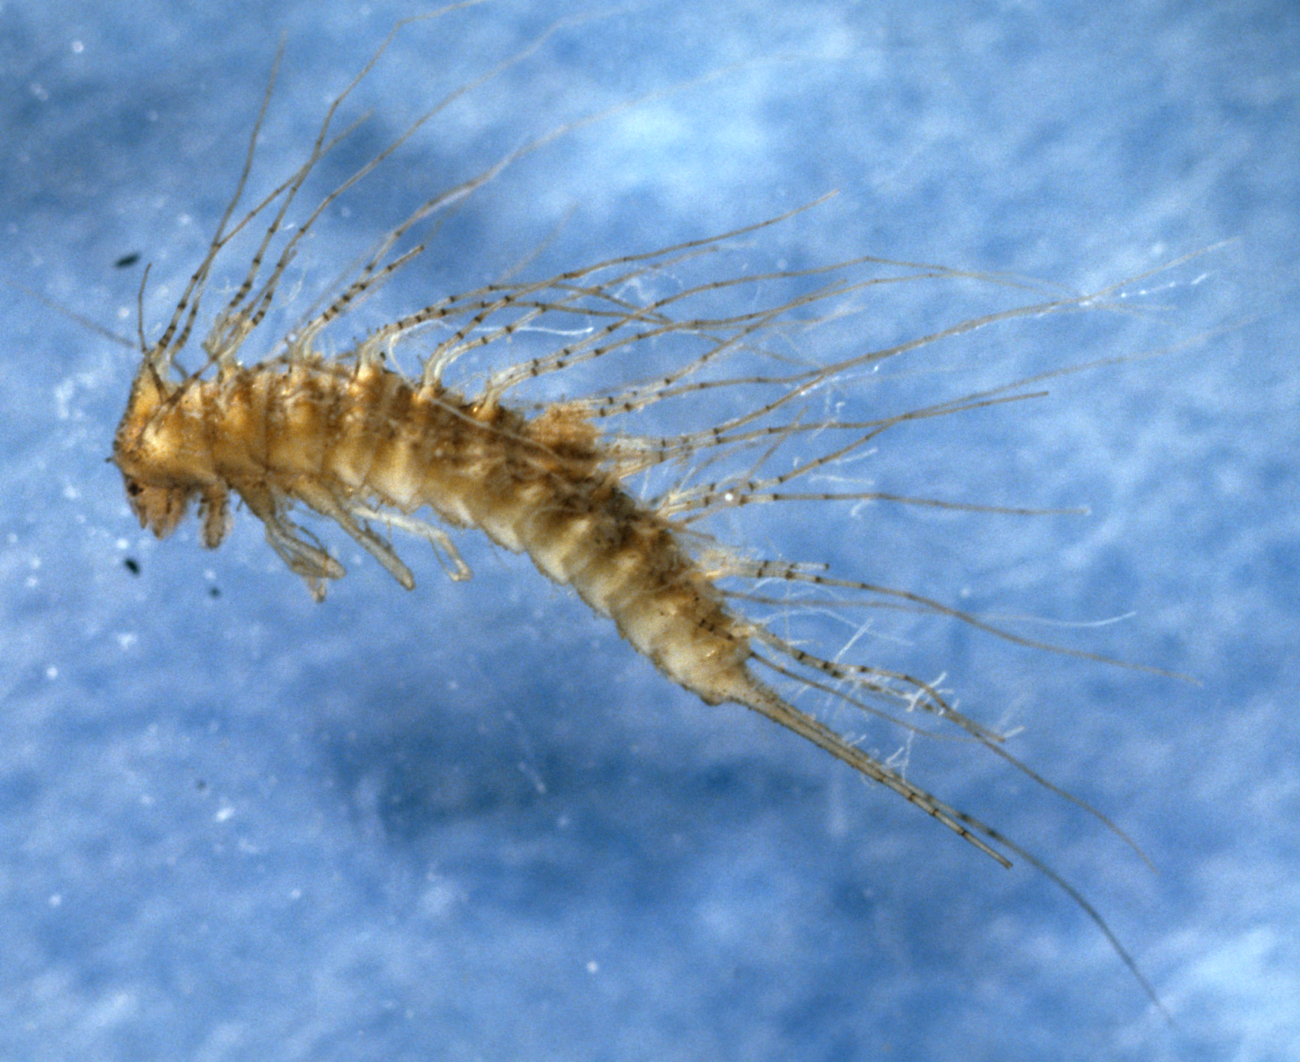 Beetle larva (Peltodytes sp